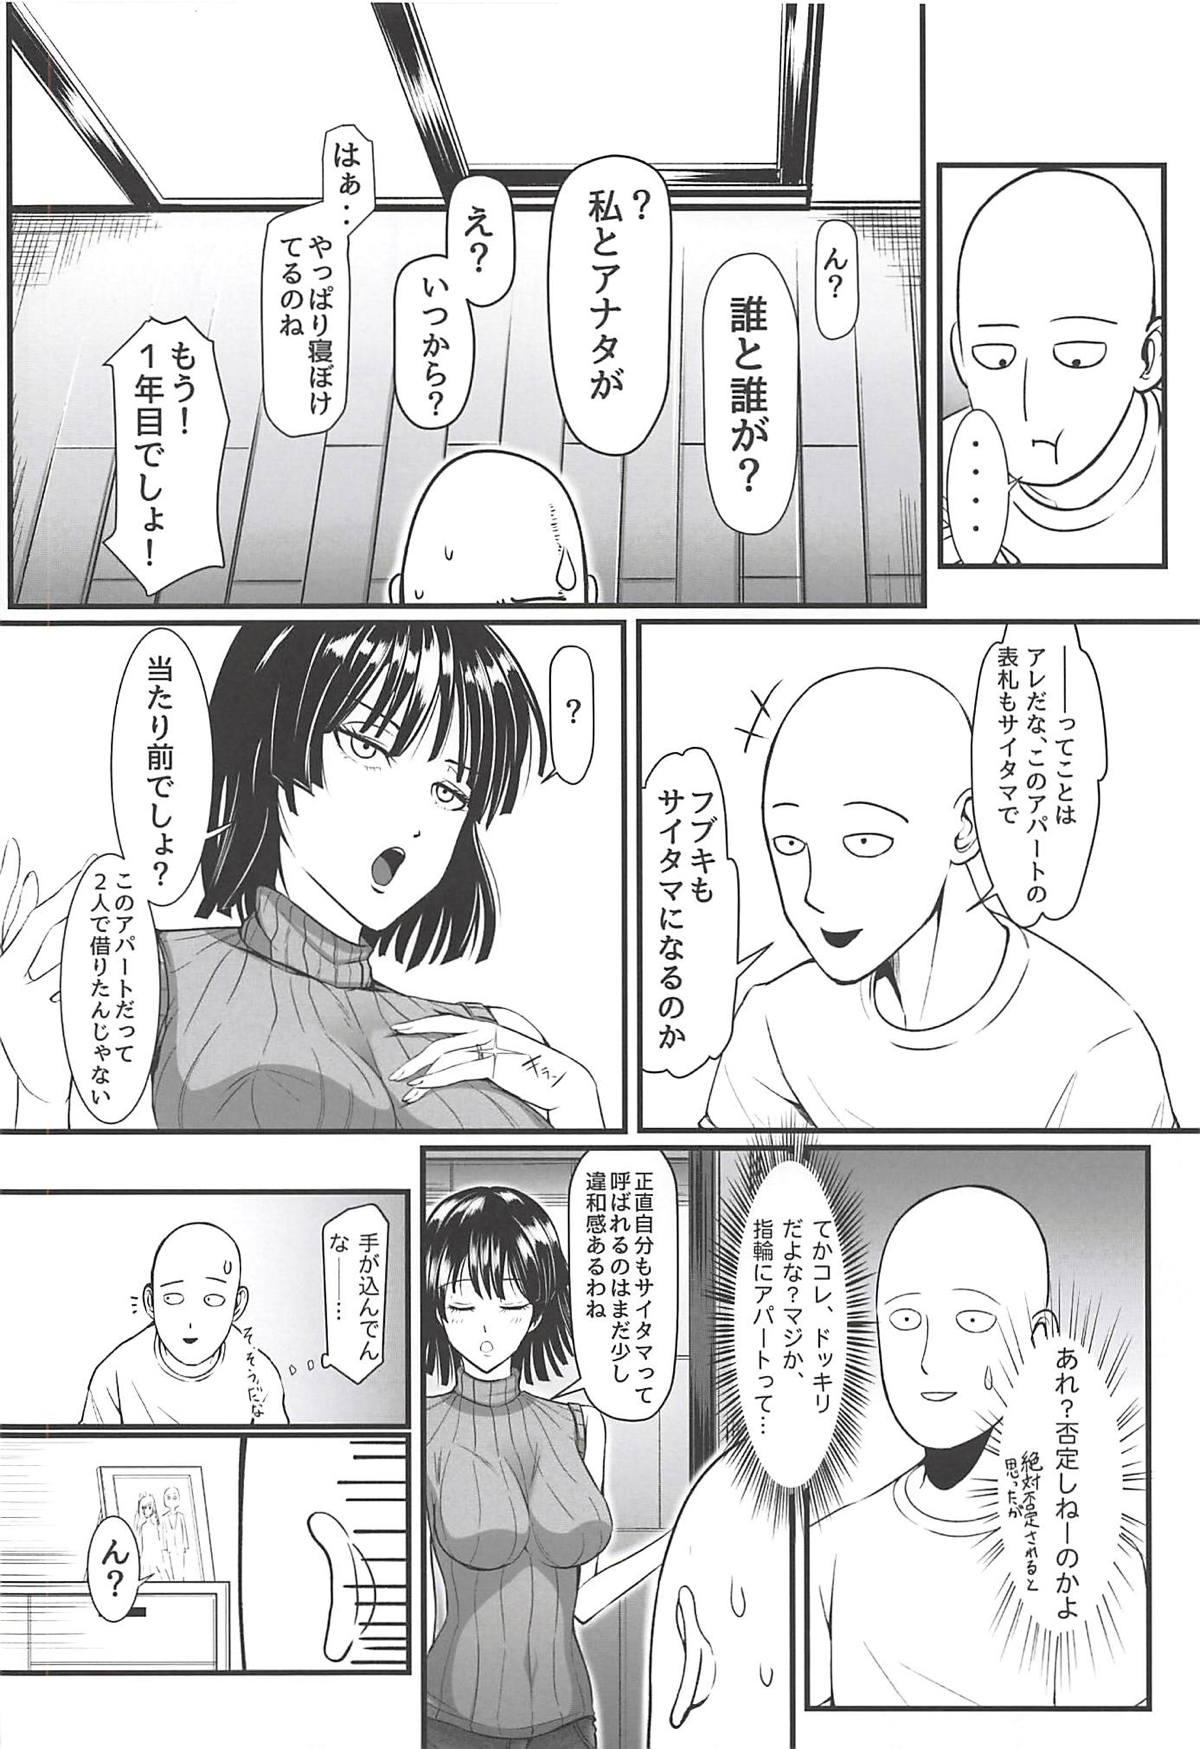 Naughty Dekoboko Love sister 3-gekime - One punch man Vergon - Page 6